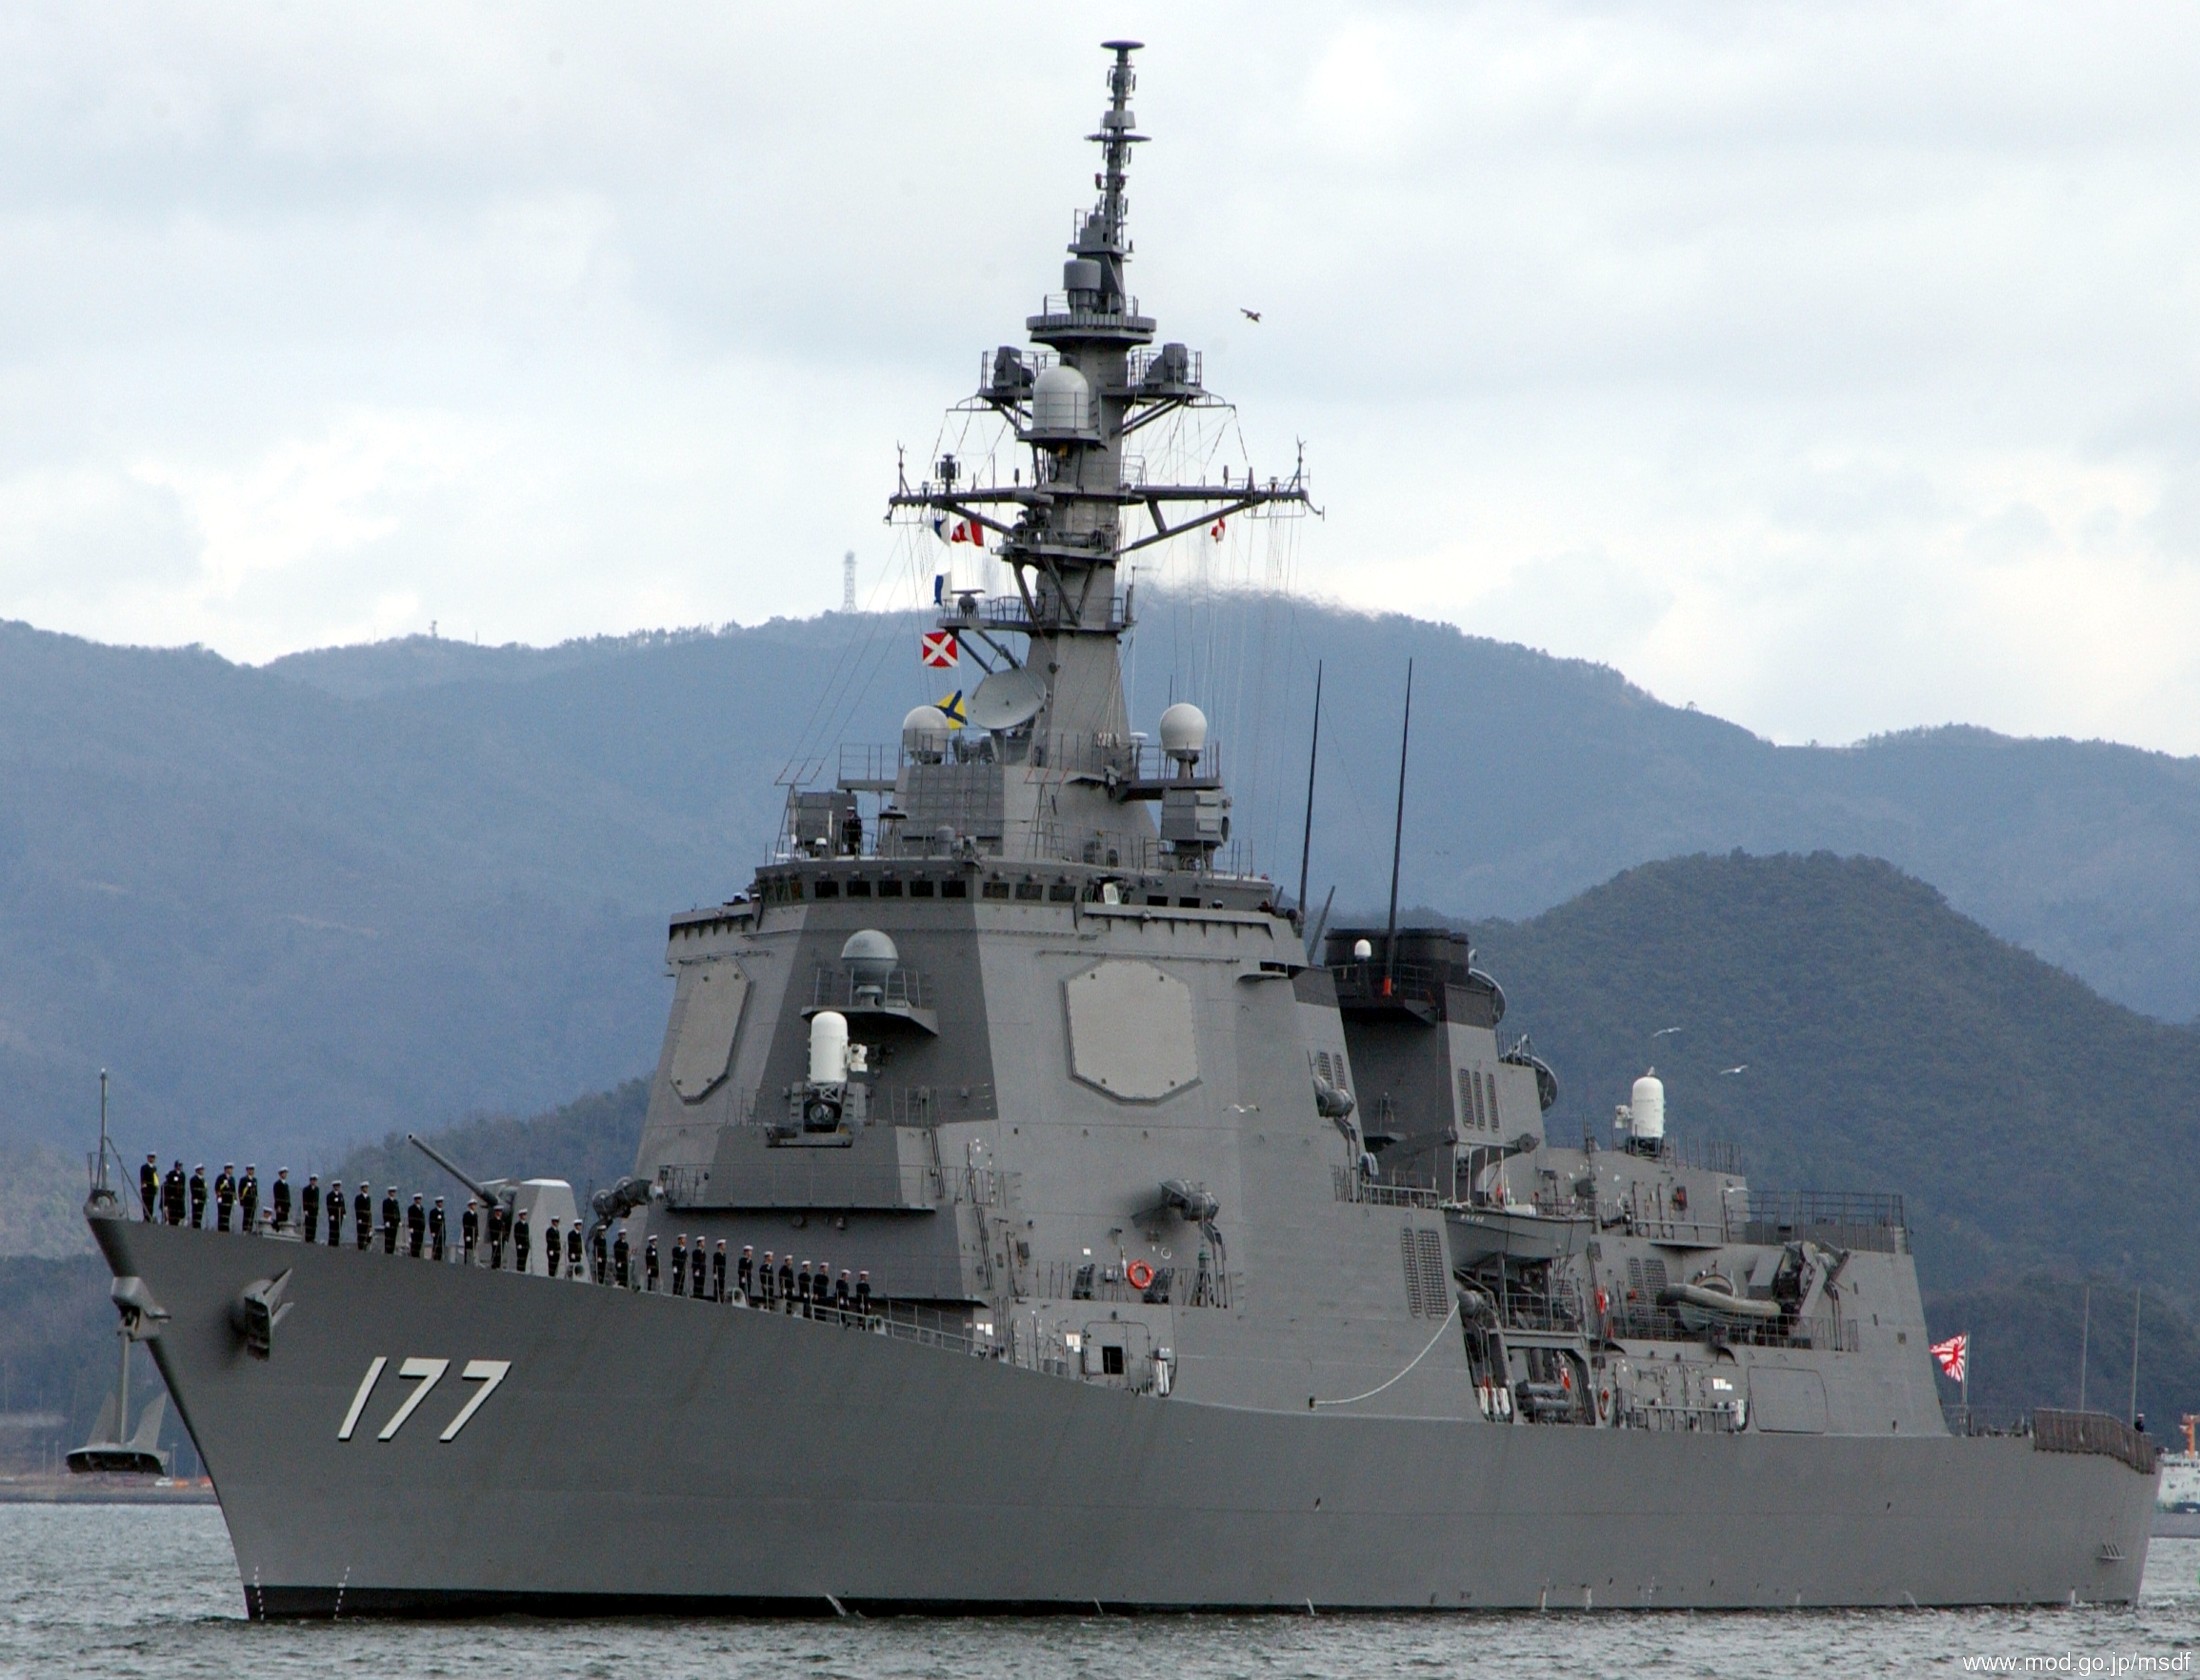 ddg-177 jds atago guided missile destroyer japan maritime self defense force jmsdf 02